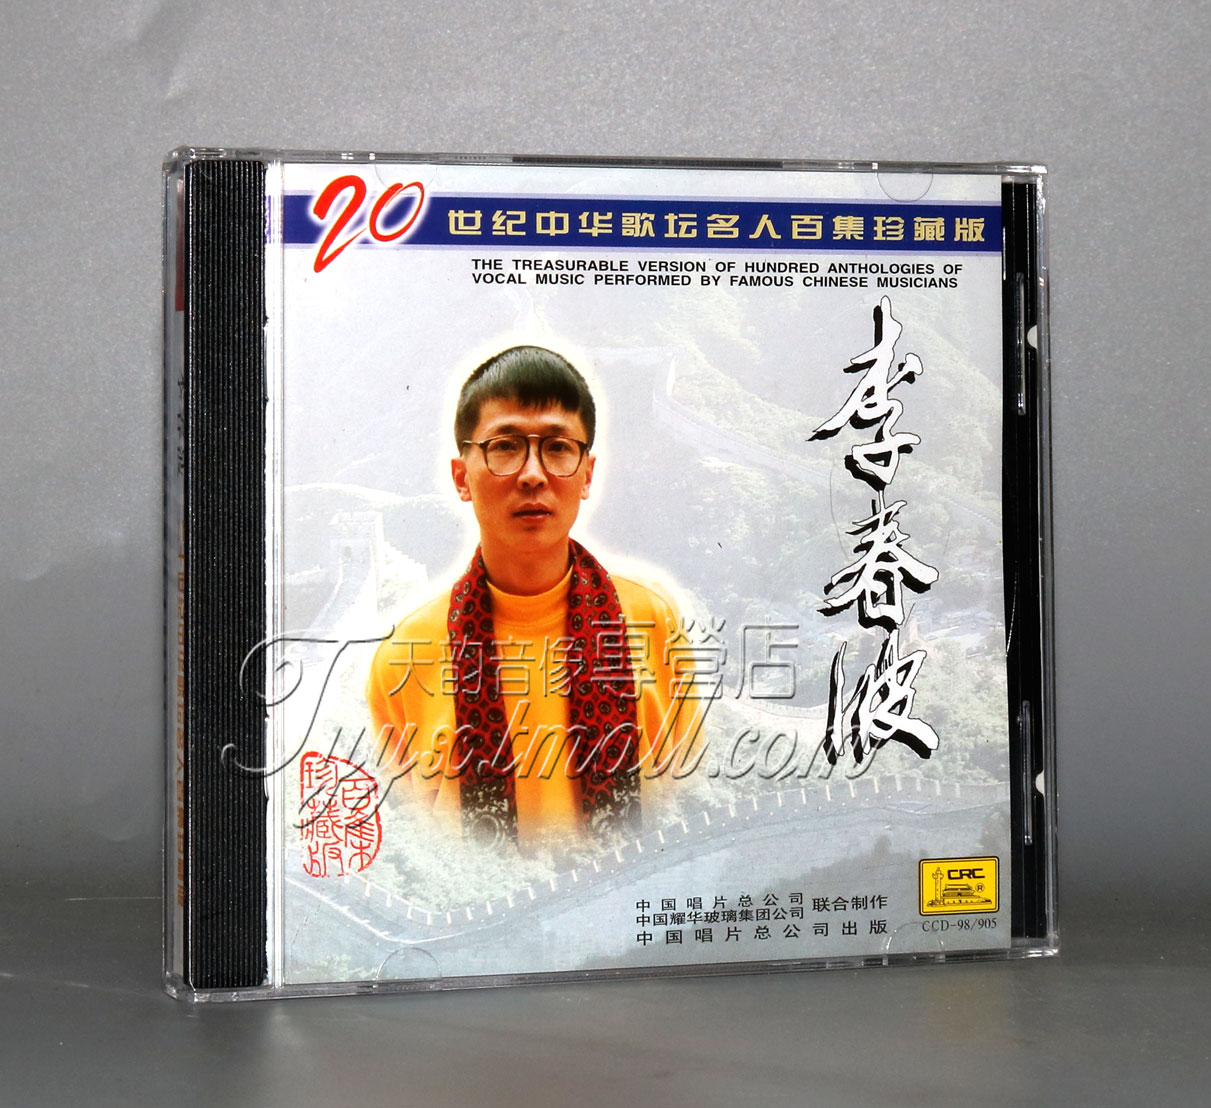 正版 中唱 20世纪中华歌坛名人百集珍藏版 李春波 1CD 碟片